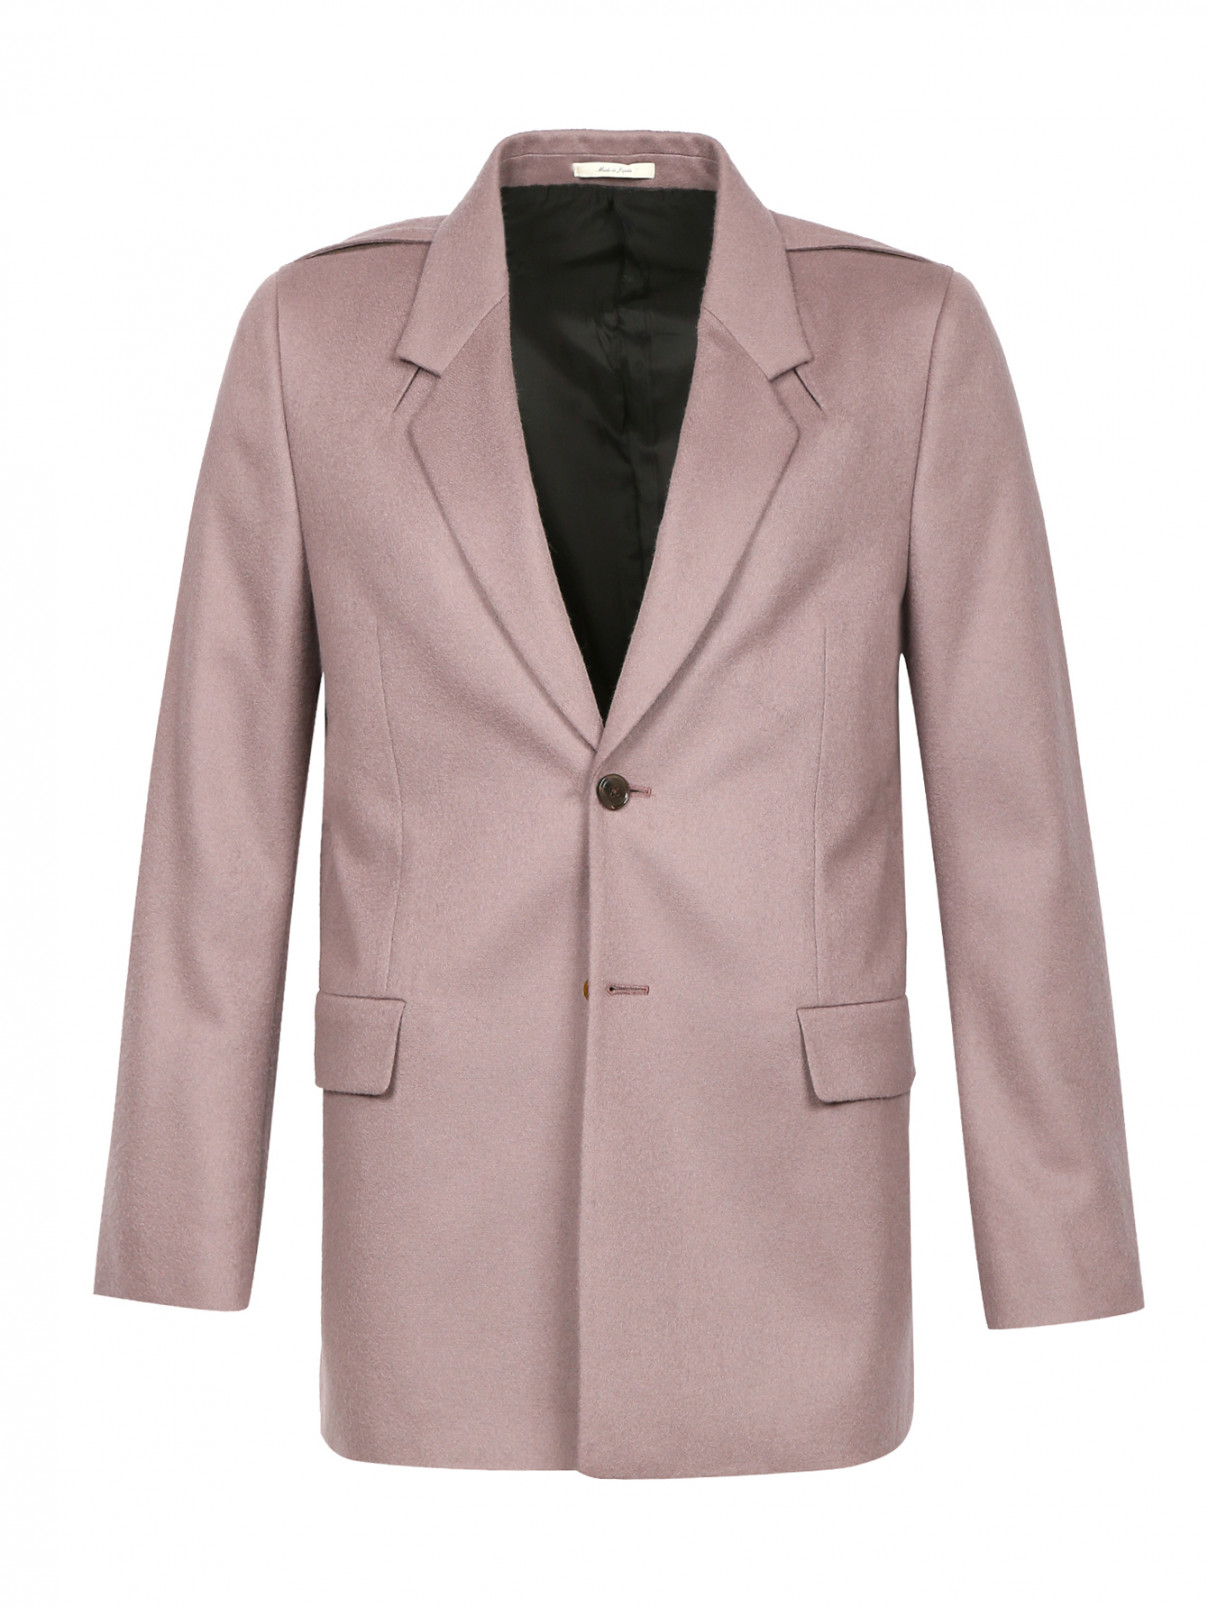 Однобортный пиджак из шерсти Paul Smith  –  Общий вид  – Цвет:  Серый